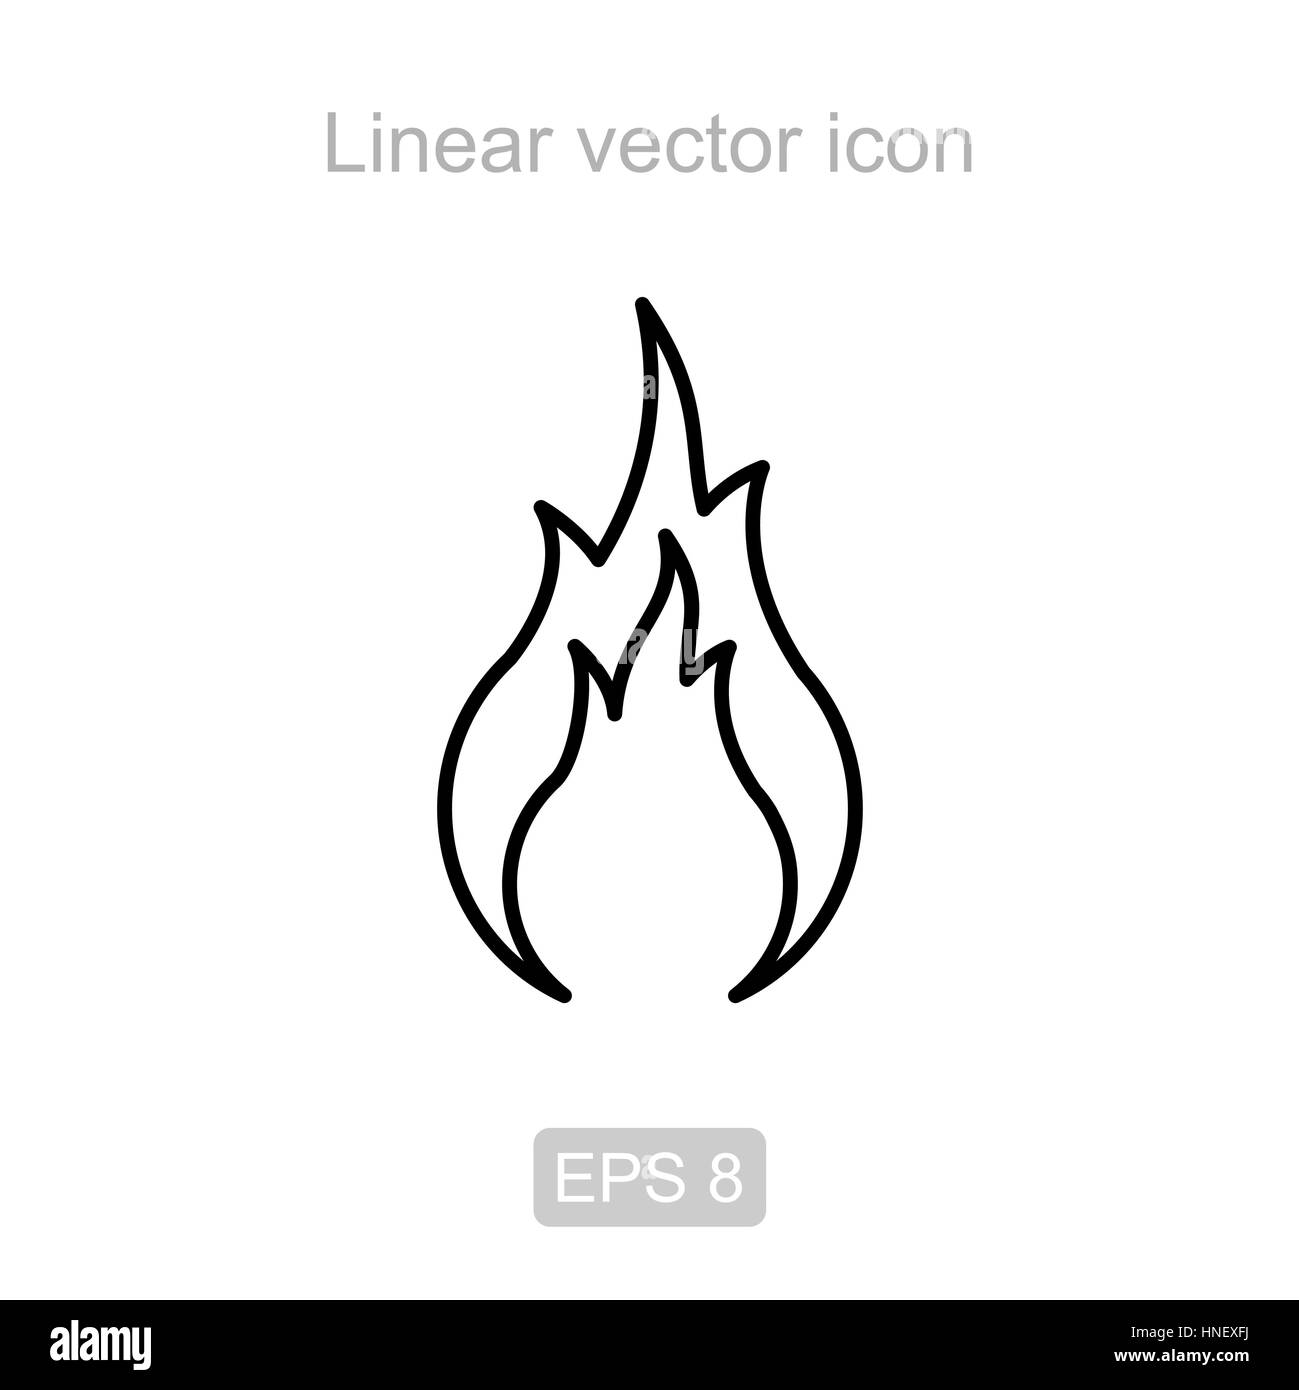 Fire. Linear vector icon. Stock Vector